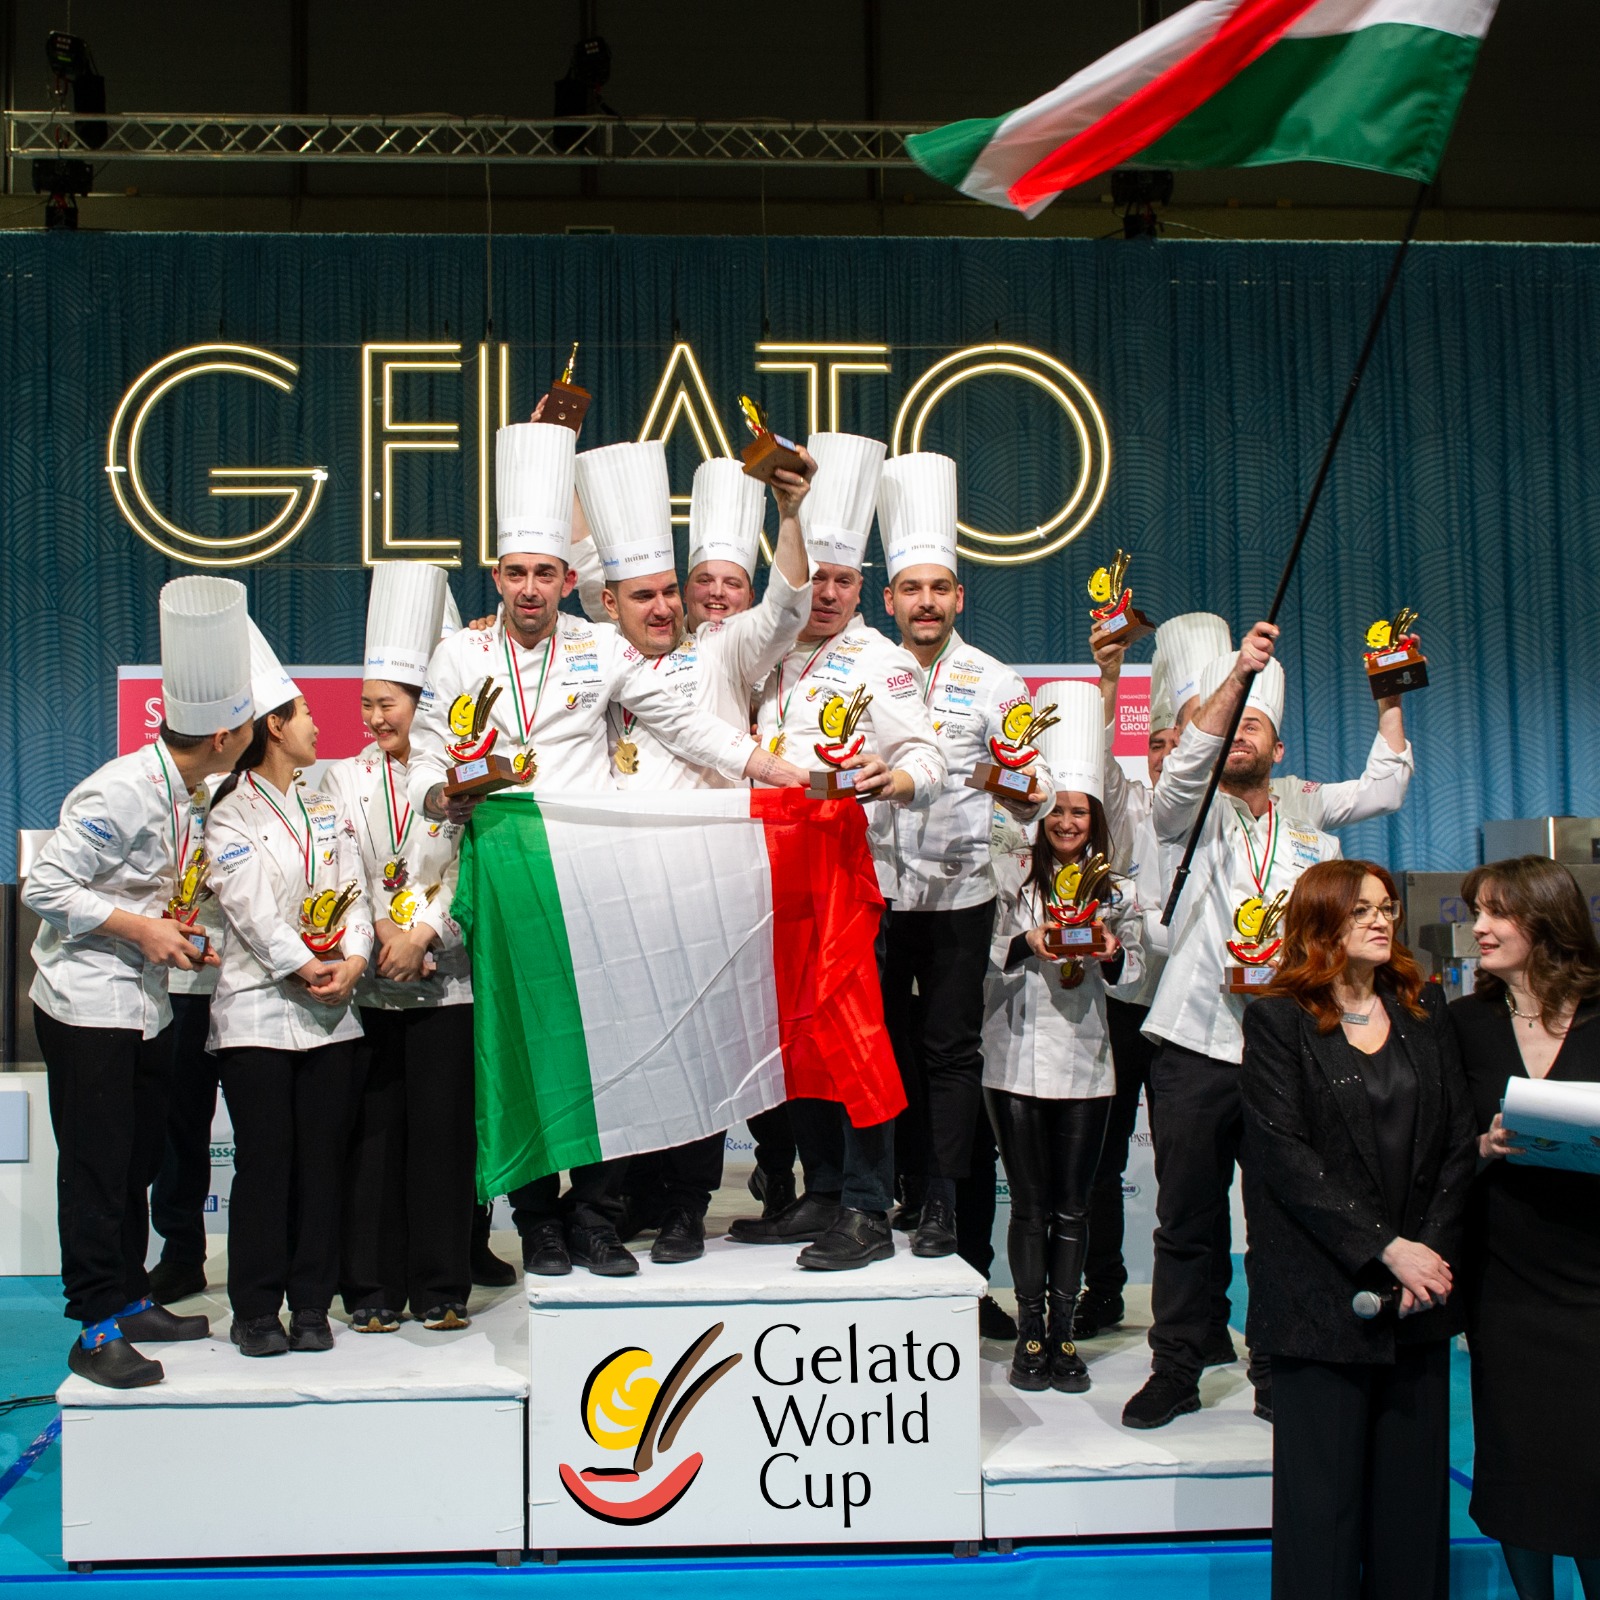 Il podio della X Edizione della Gelato World Cup: al terzo posto l'Ungheria, al secondo posto la Corea del Sud, al primo posto l'Italia.